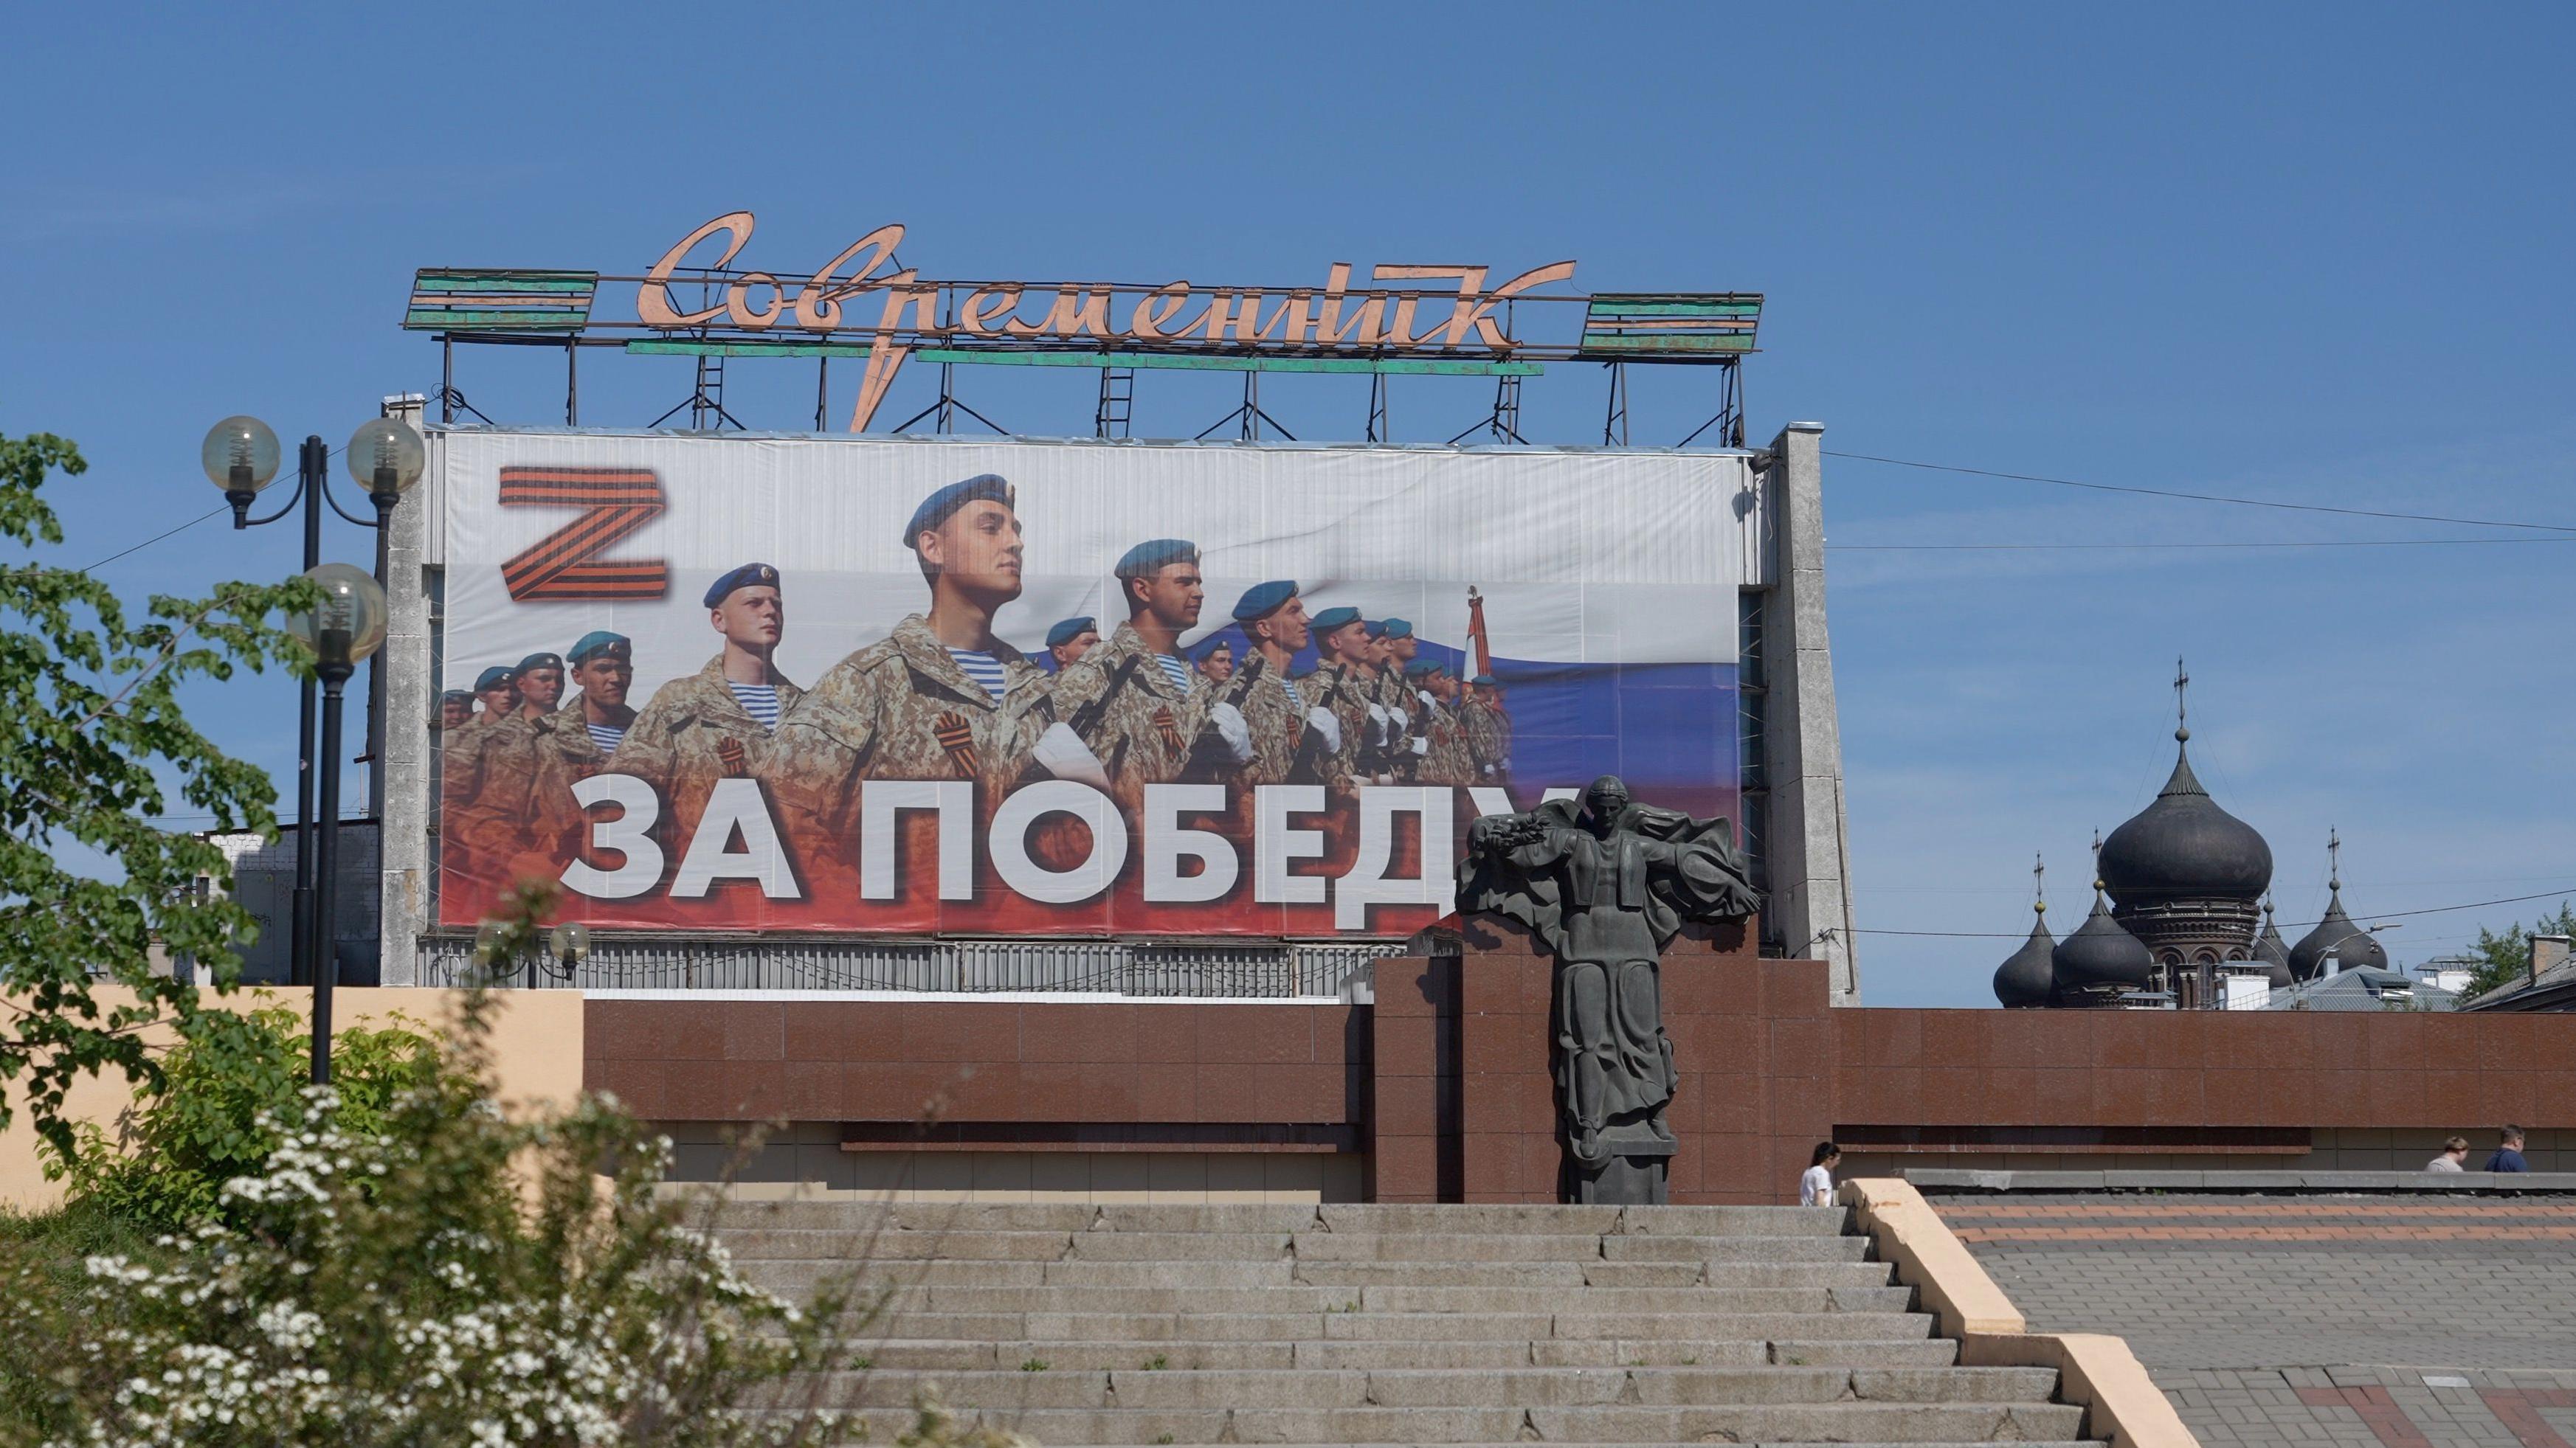 ‘승리를 위하여’라고 적힌 러시아의 공공 옥외 광고판